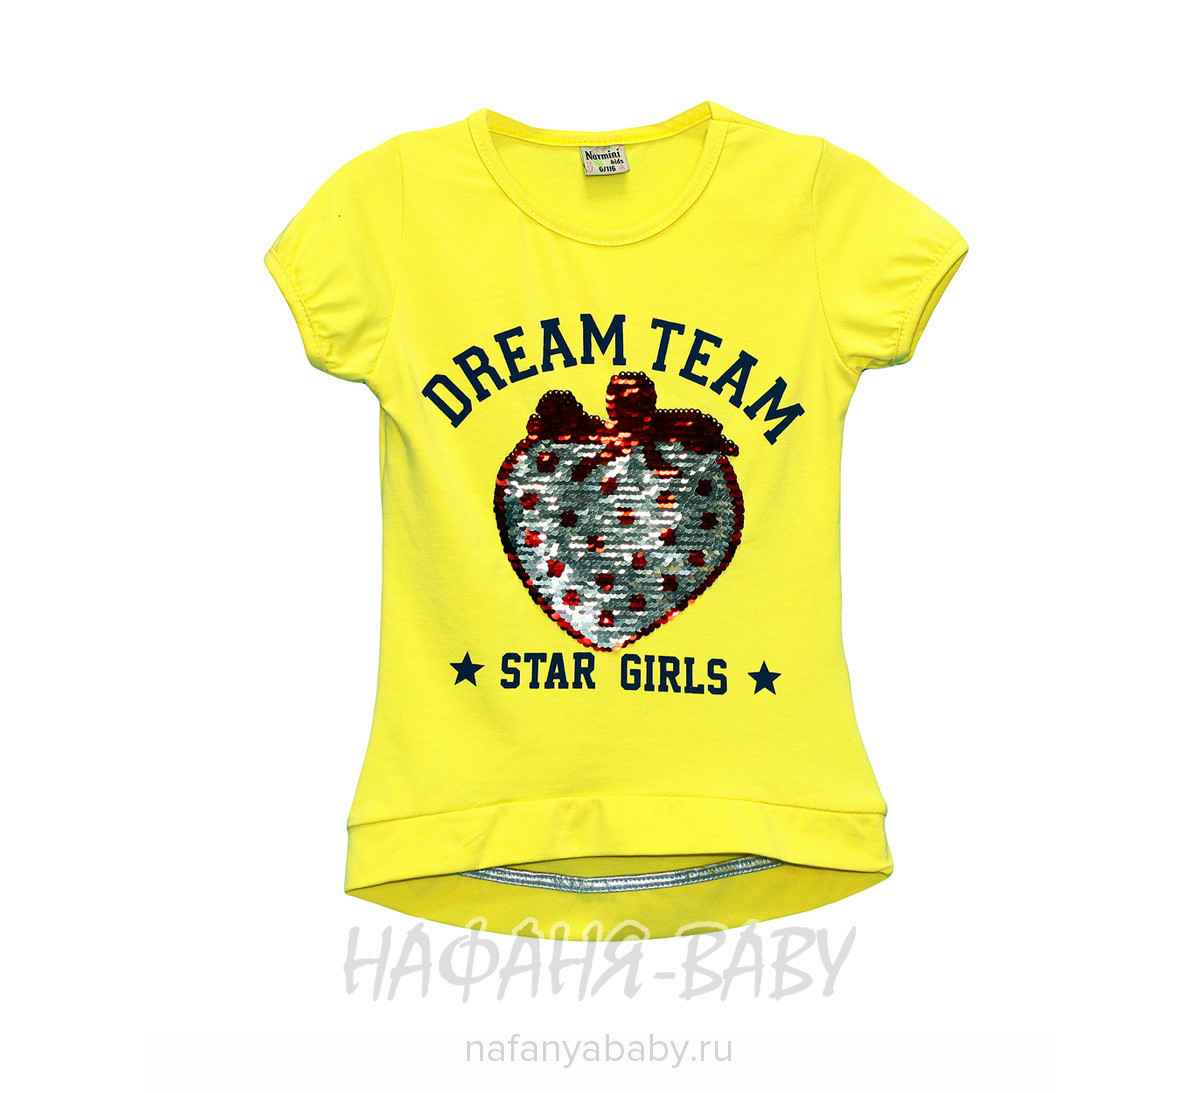 Детская футболка, артикул 5583 NARMINI арт: 5583, цвет желтый, оптом Турция